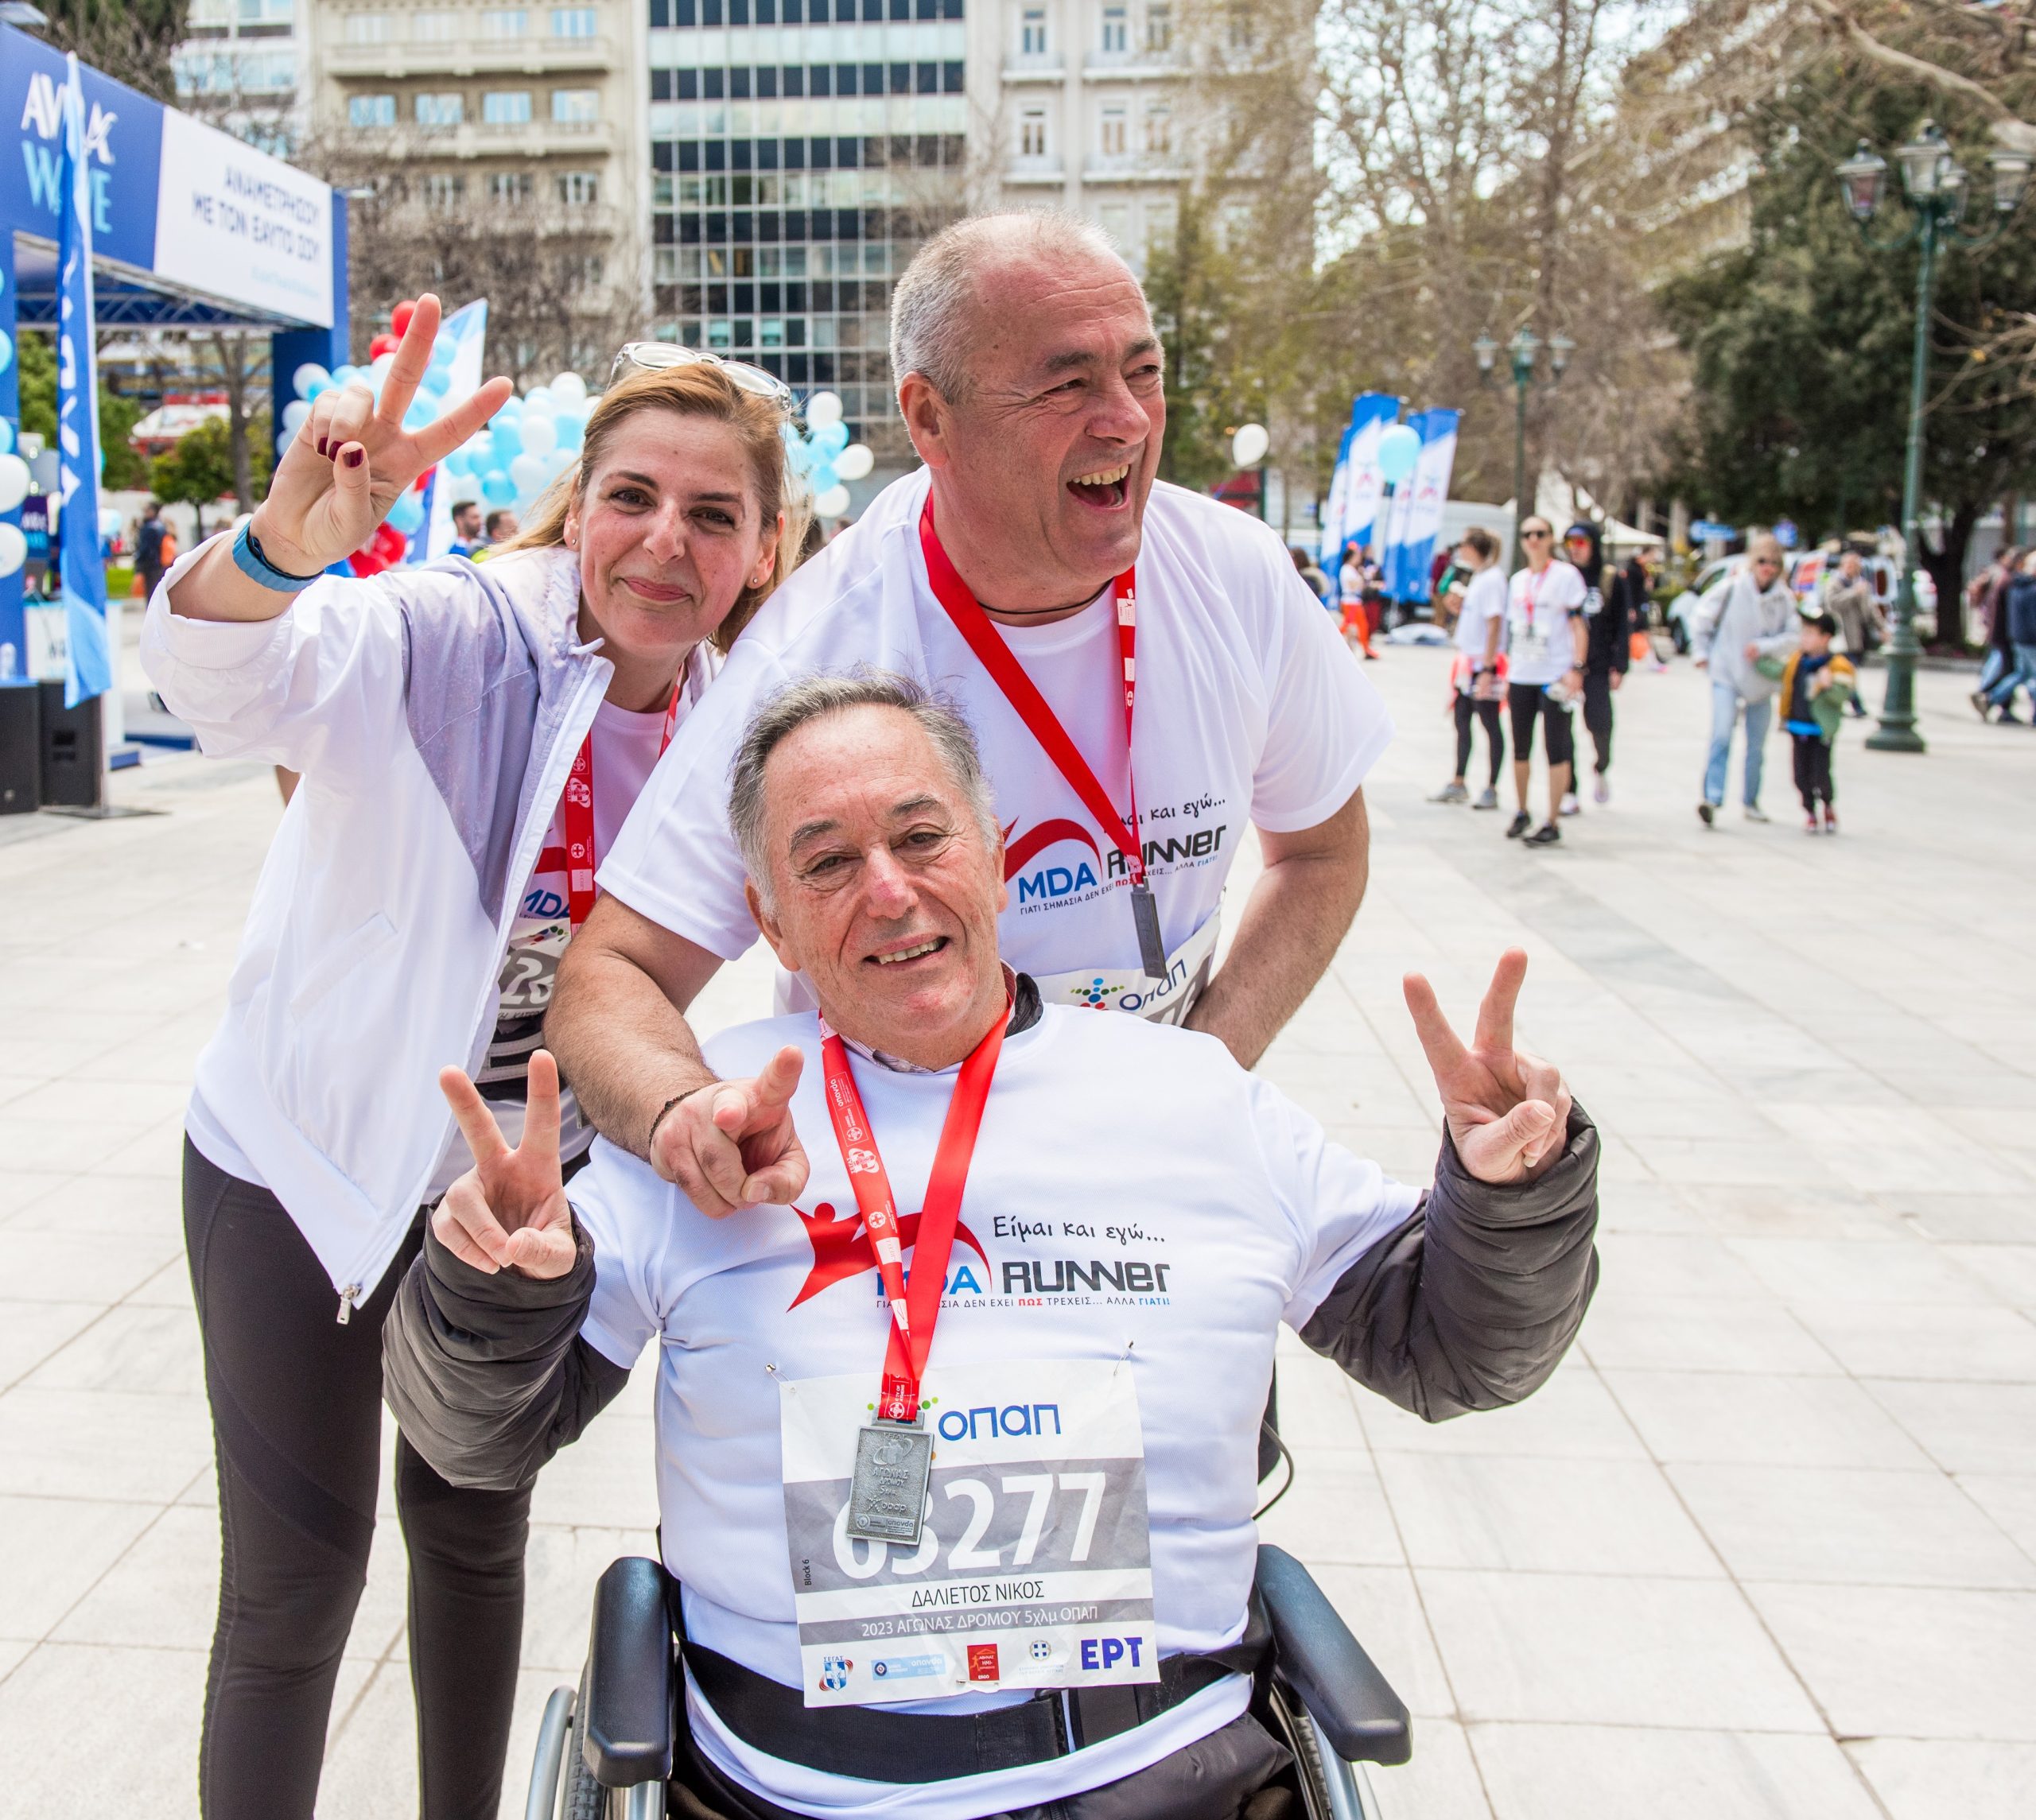 Η Lavipharm «έτρεξε» στον 11ο Ημιμαραθώνιο της Αθήνας για την ενίσχυση του MDA Ελλάς